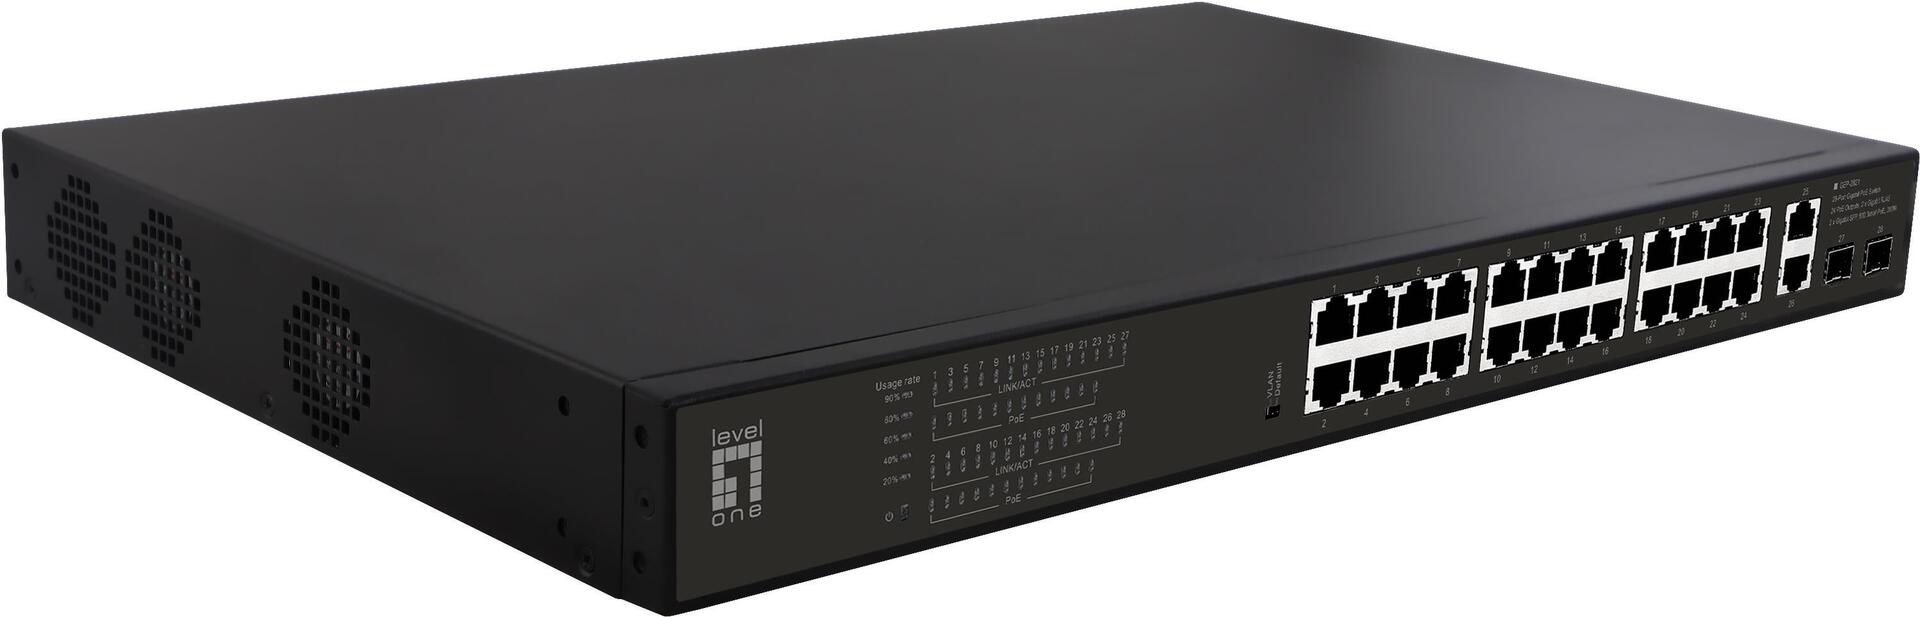 LevelOne GEP-2821 Netzwerk-Switch Unmanaged Gigabit Ethernet (10/100/1000) Power over Ethernet (PoE) 1U Schwarz (GEP-2821)